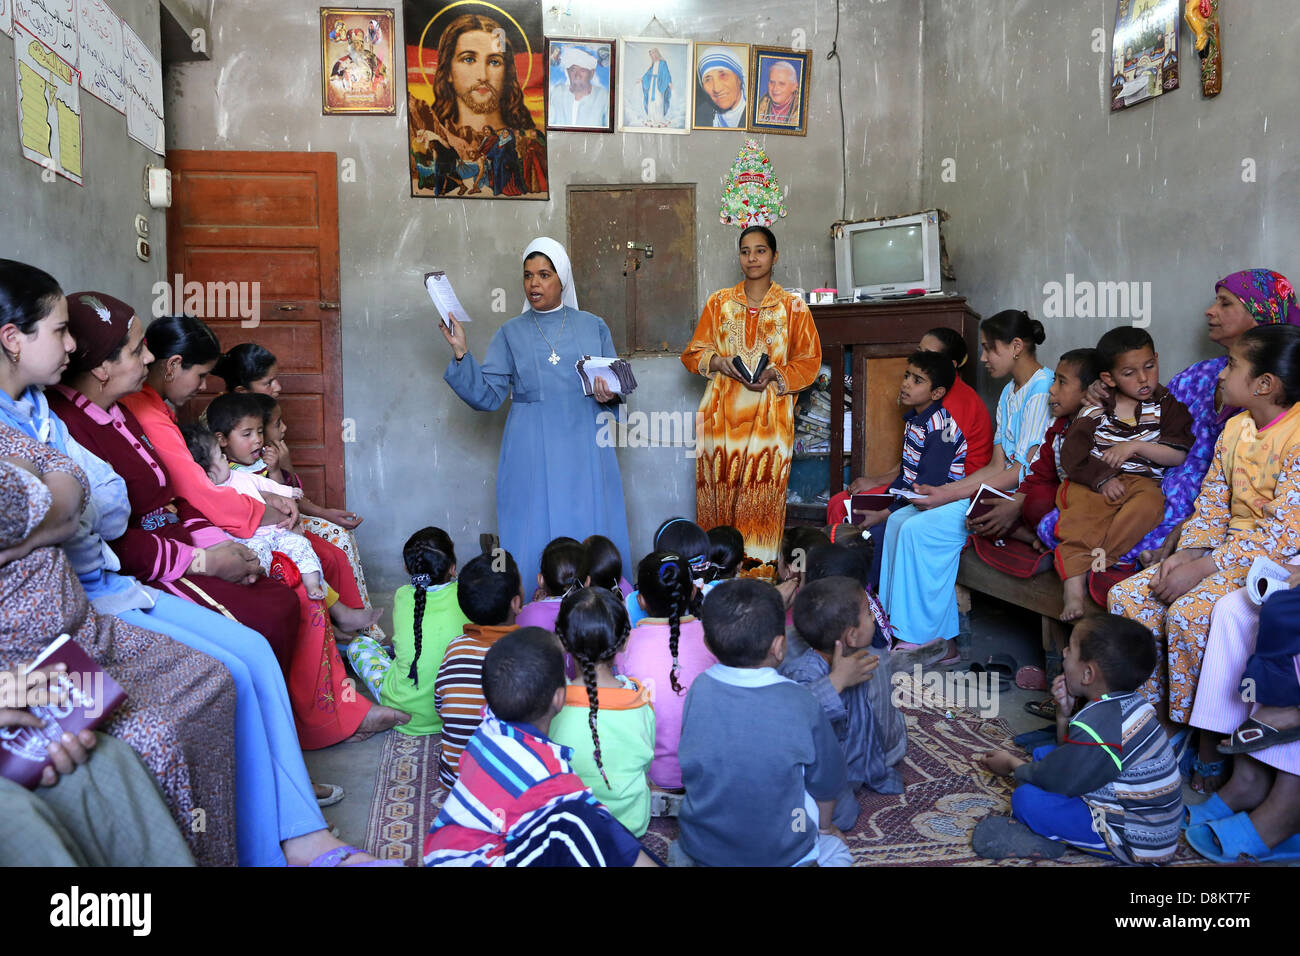 L'Egypte, l'enseignement religieux chrétien par une nonne copte catholique (Soeur) dans un ménage privé dans la région de la Haute Égypte Banque D'Images